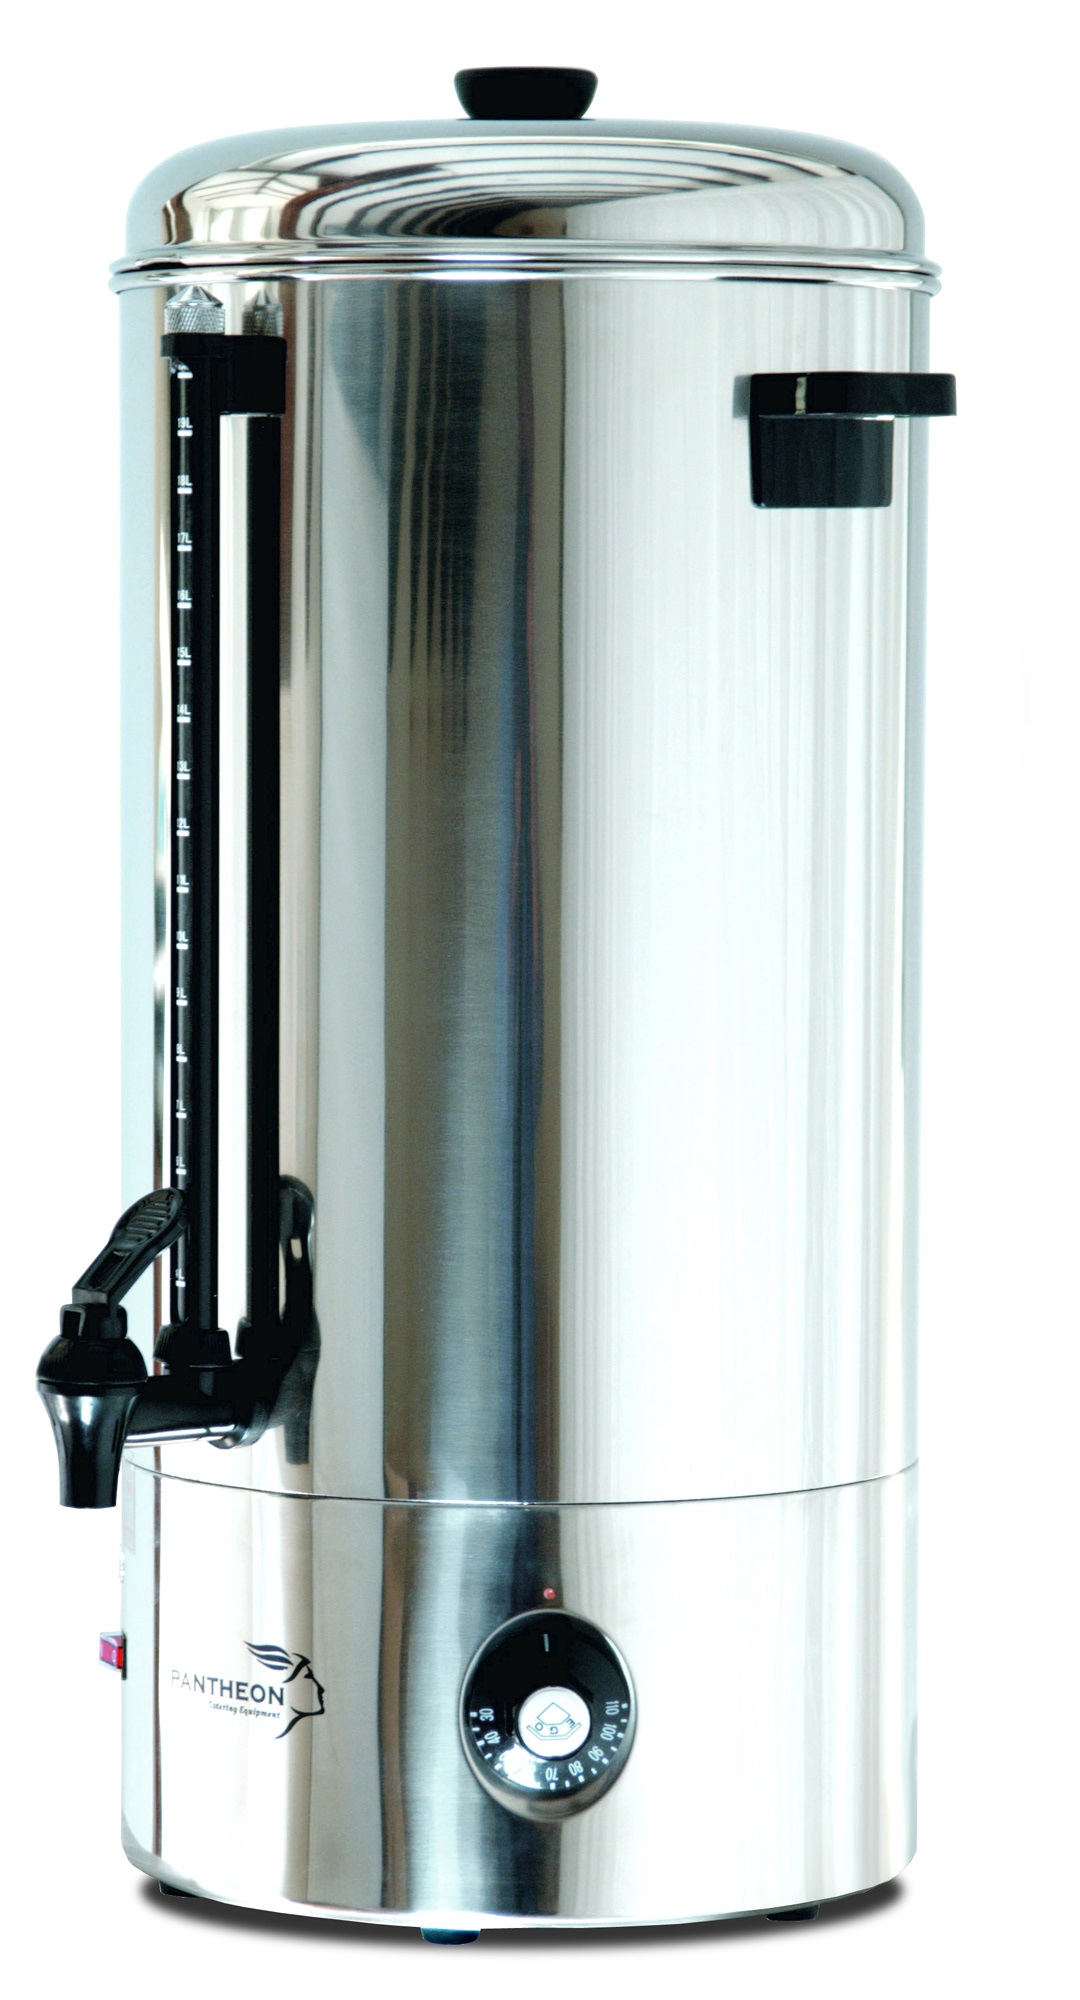 Pantheon MB20 Manual Fill Water Boiler